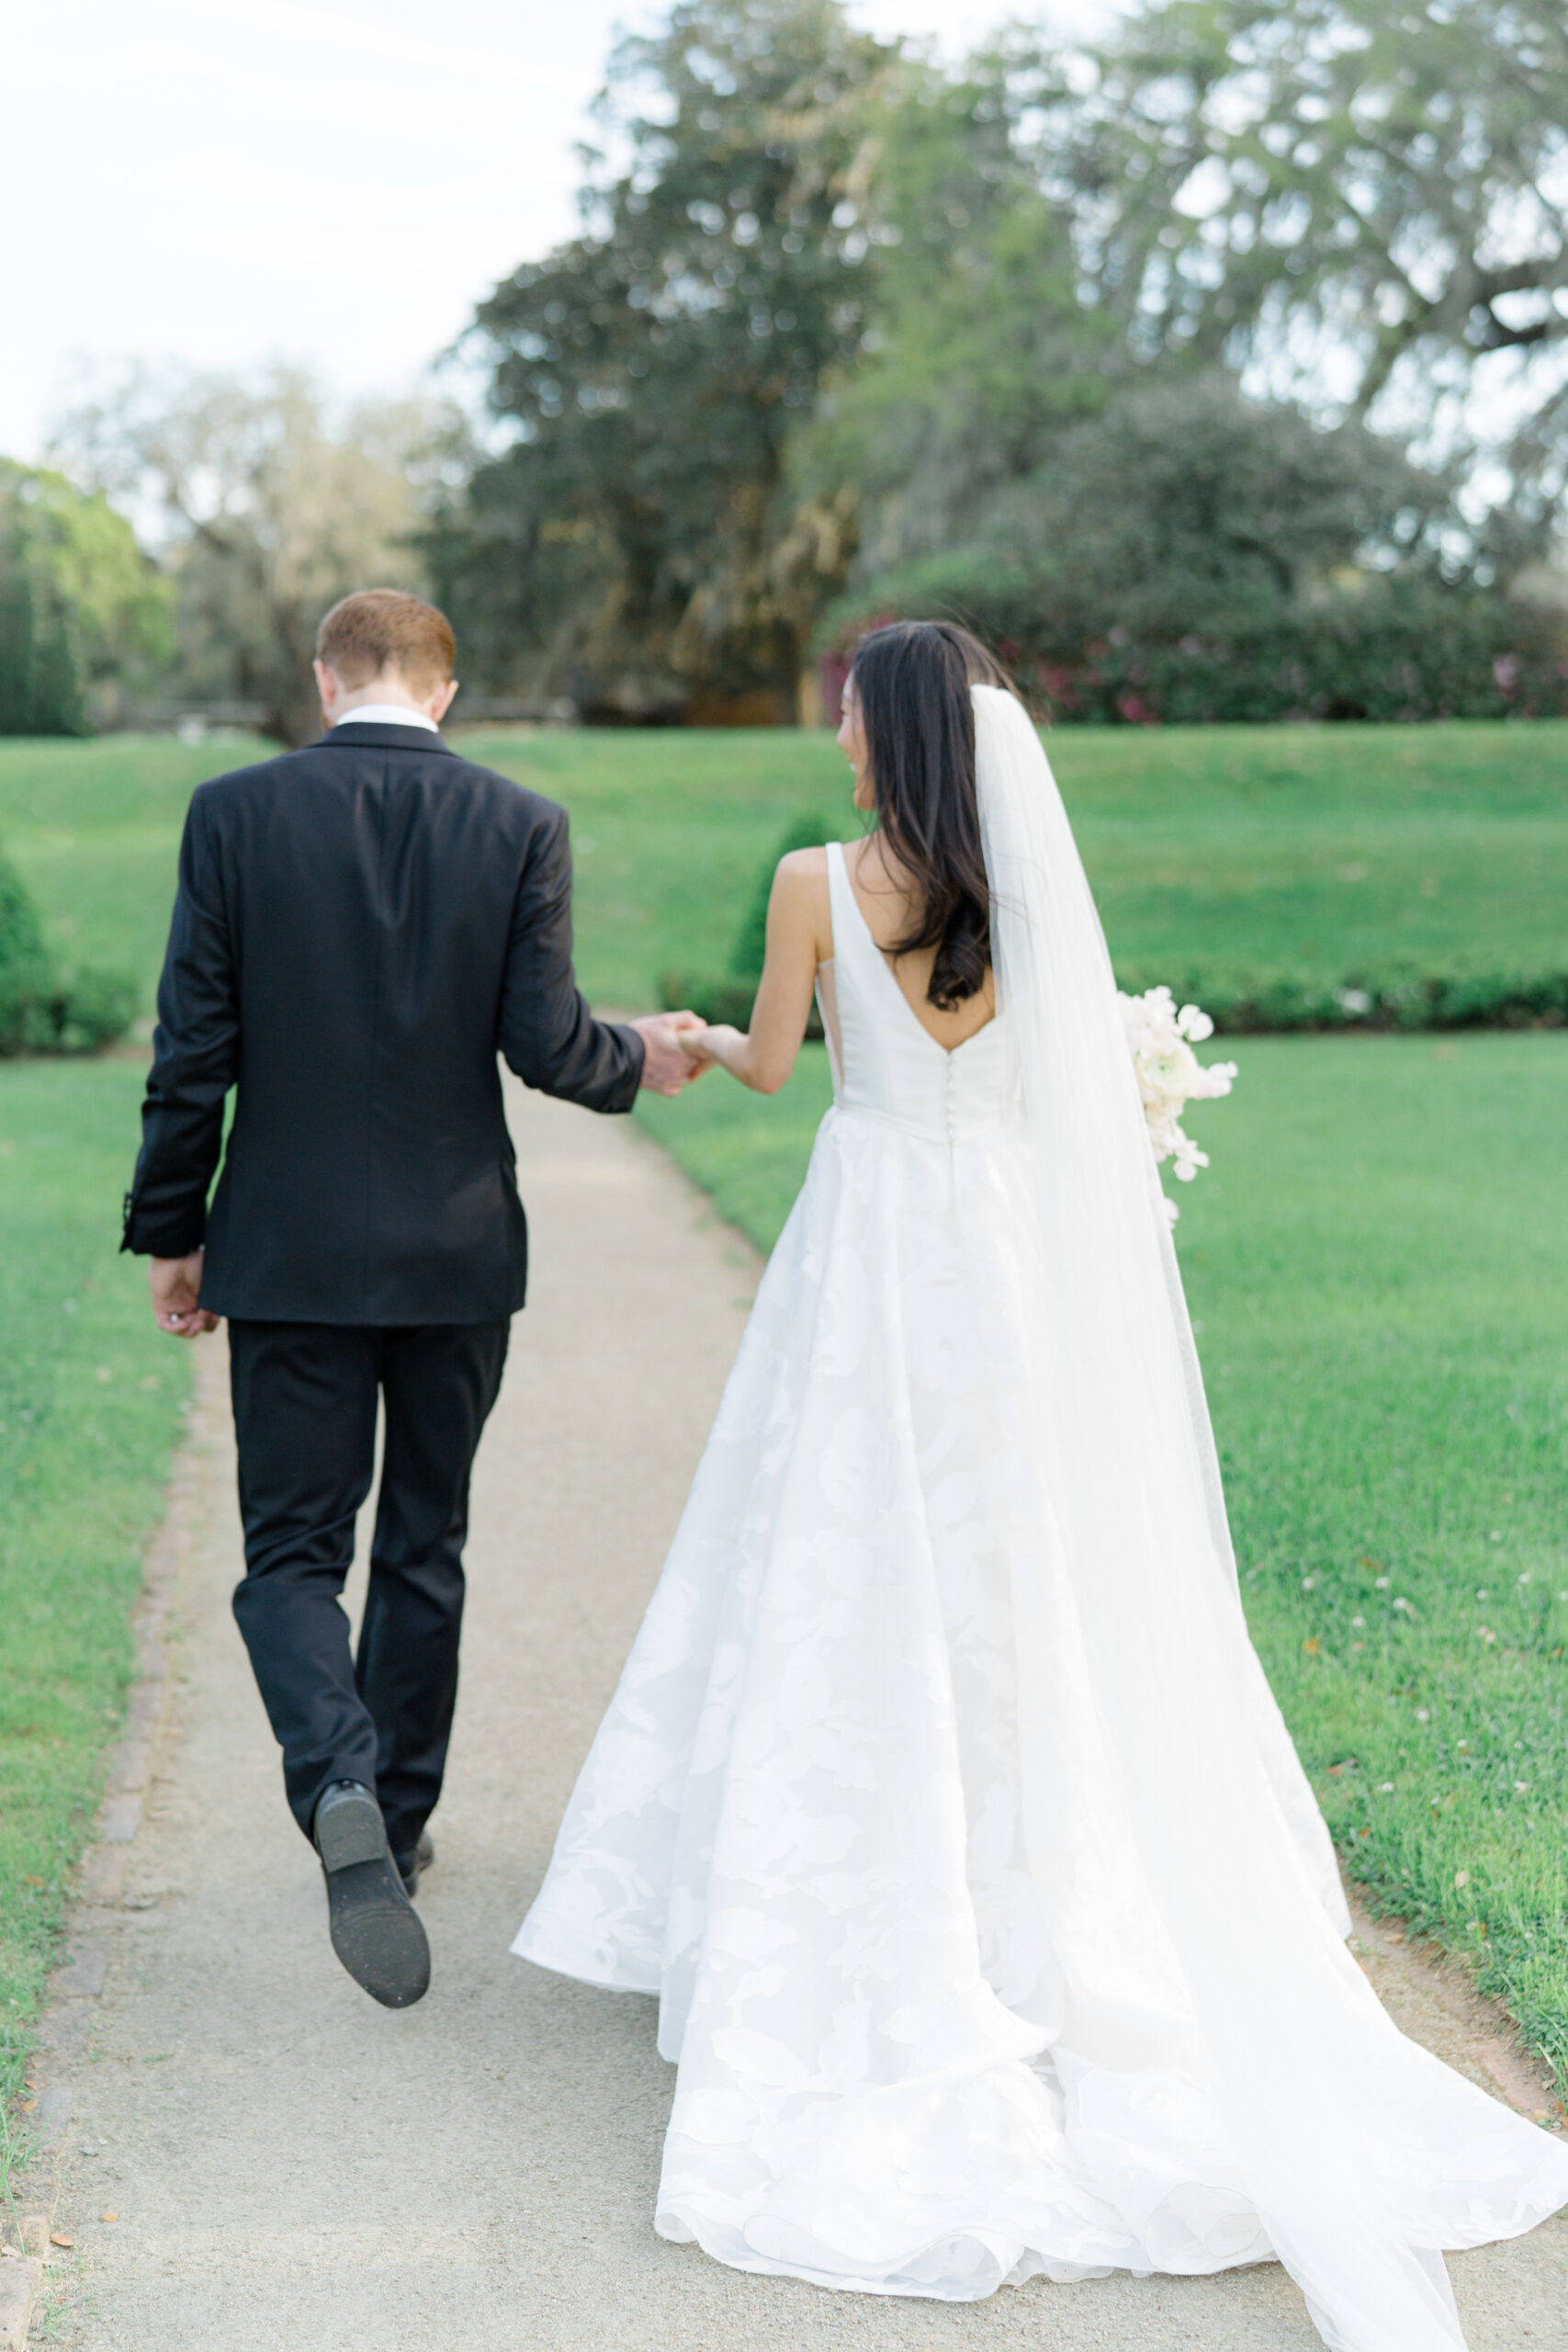 Bride and groom walking away from wedding ceremony in octagonal garden. 